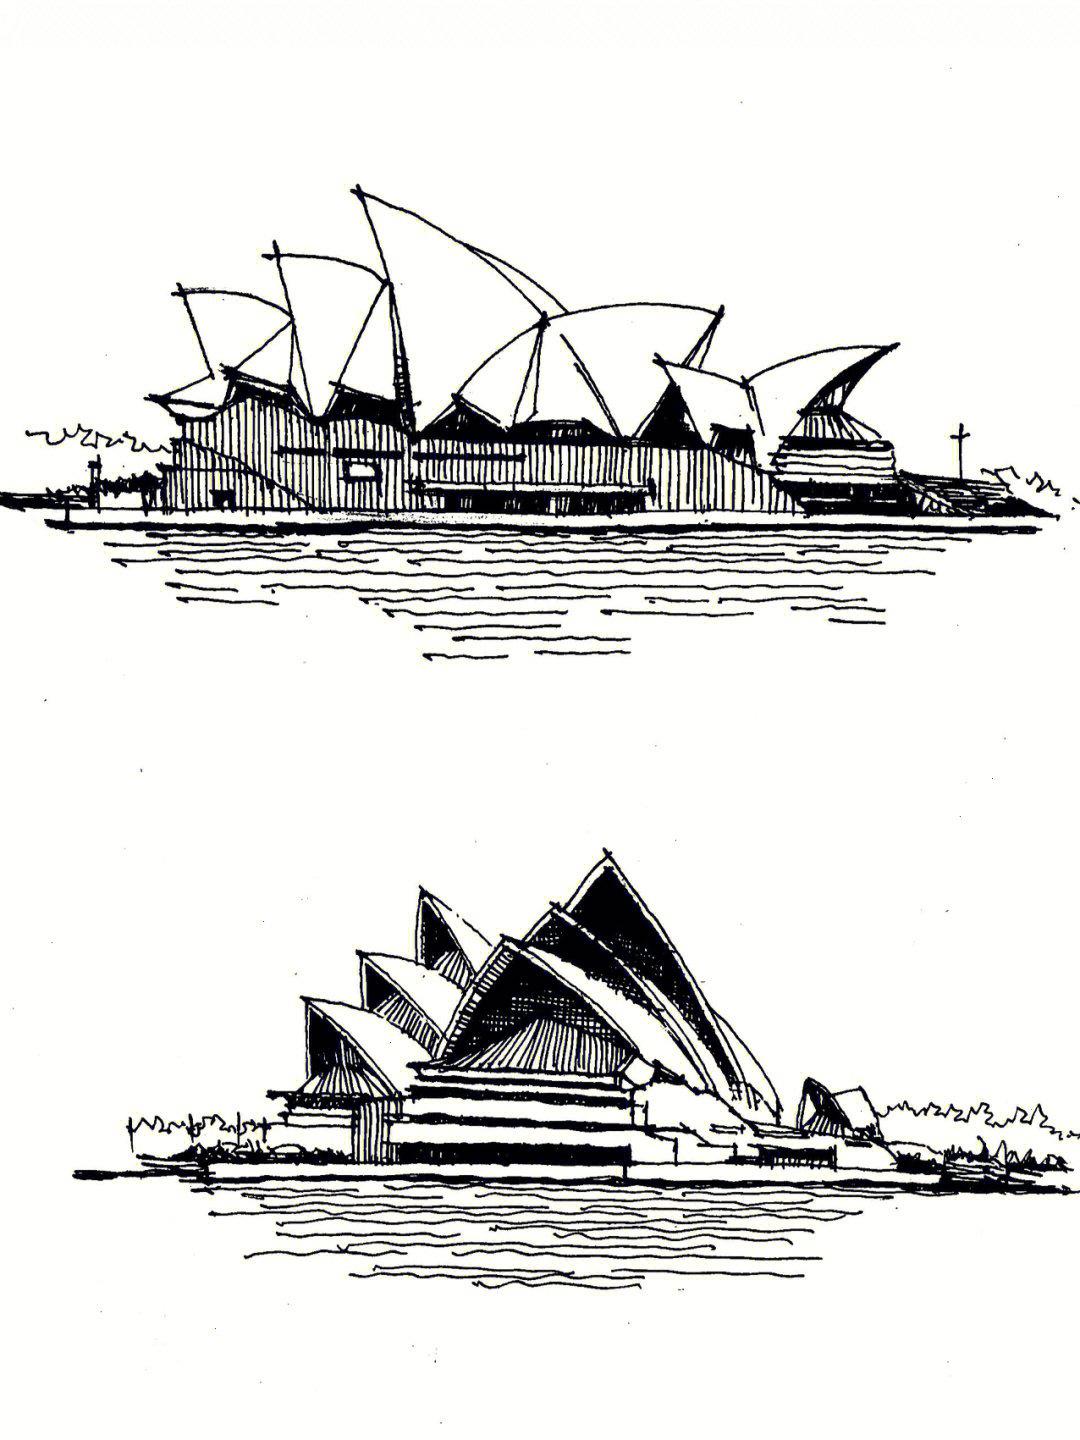 悉尼歌剧院的简笔画图片